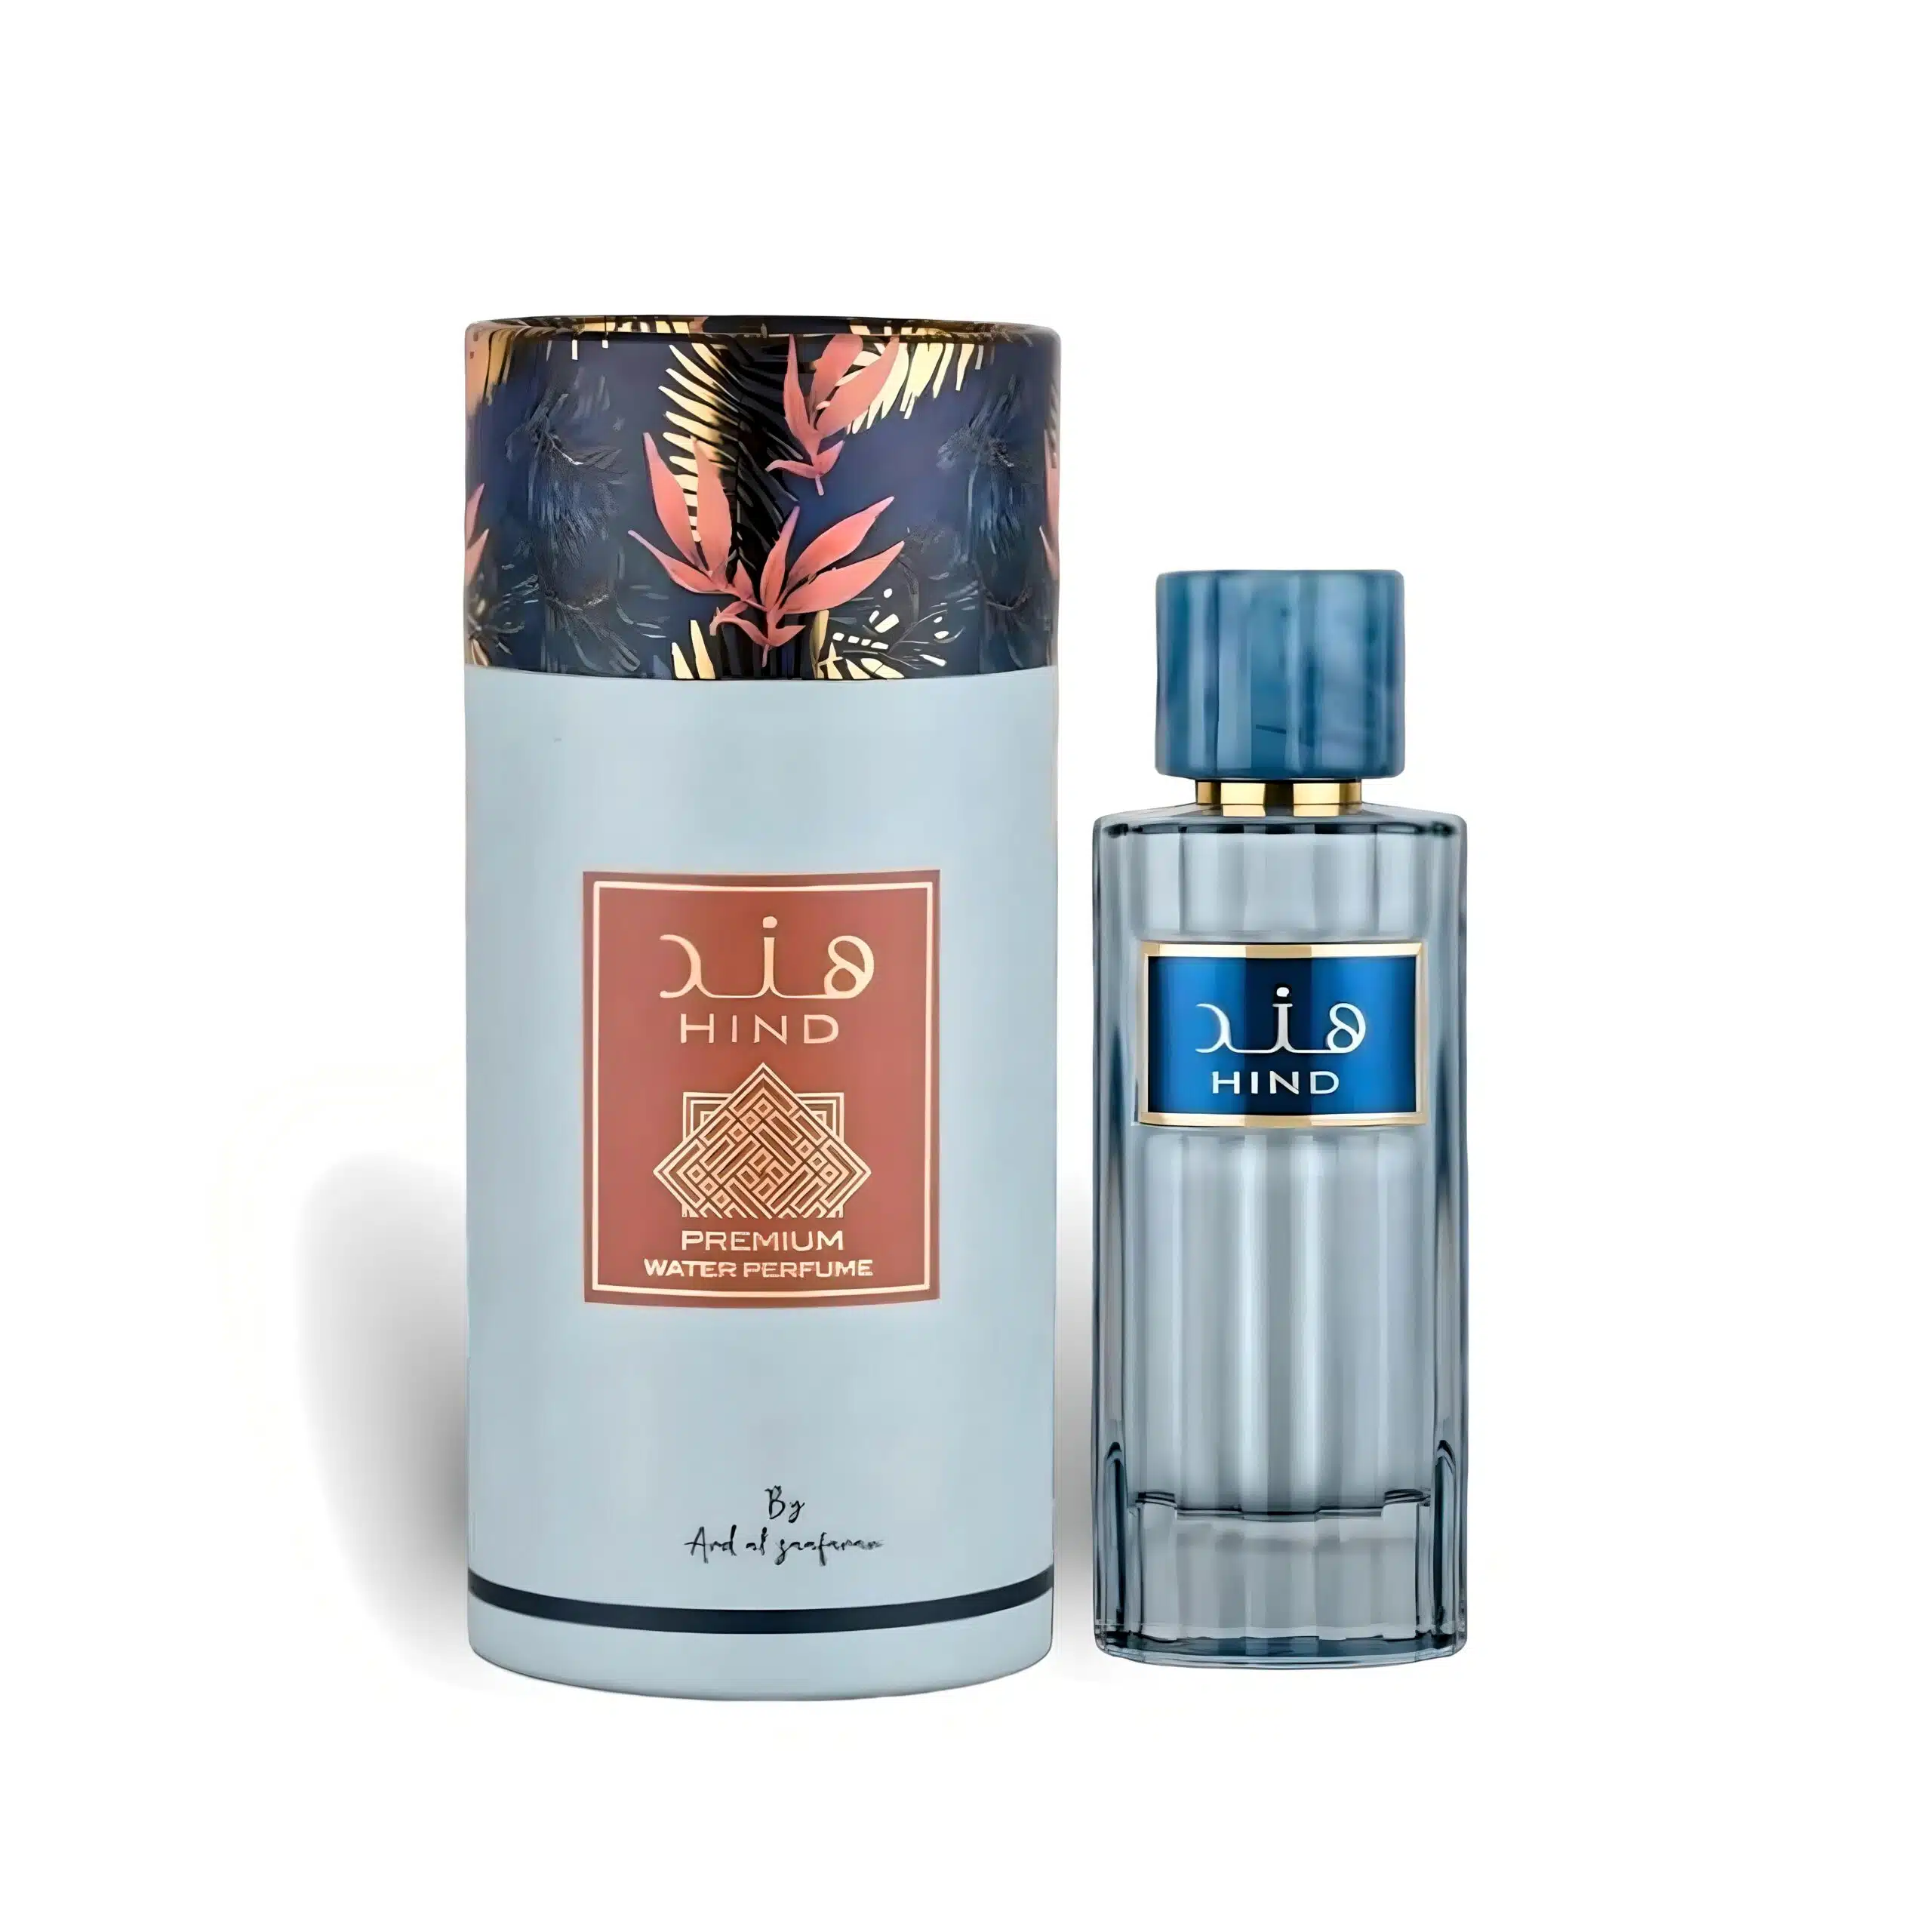 Hind 100Ml  Perfume Eau De Parfum By Ard Al Zaafaran